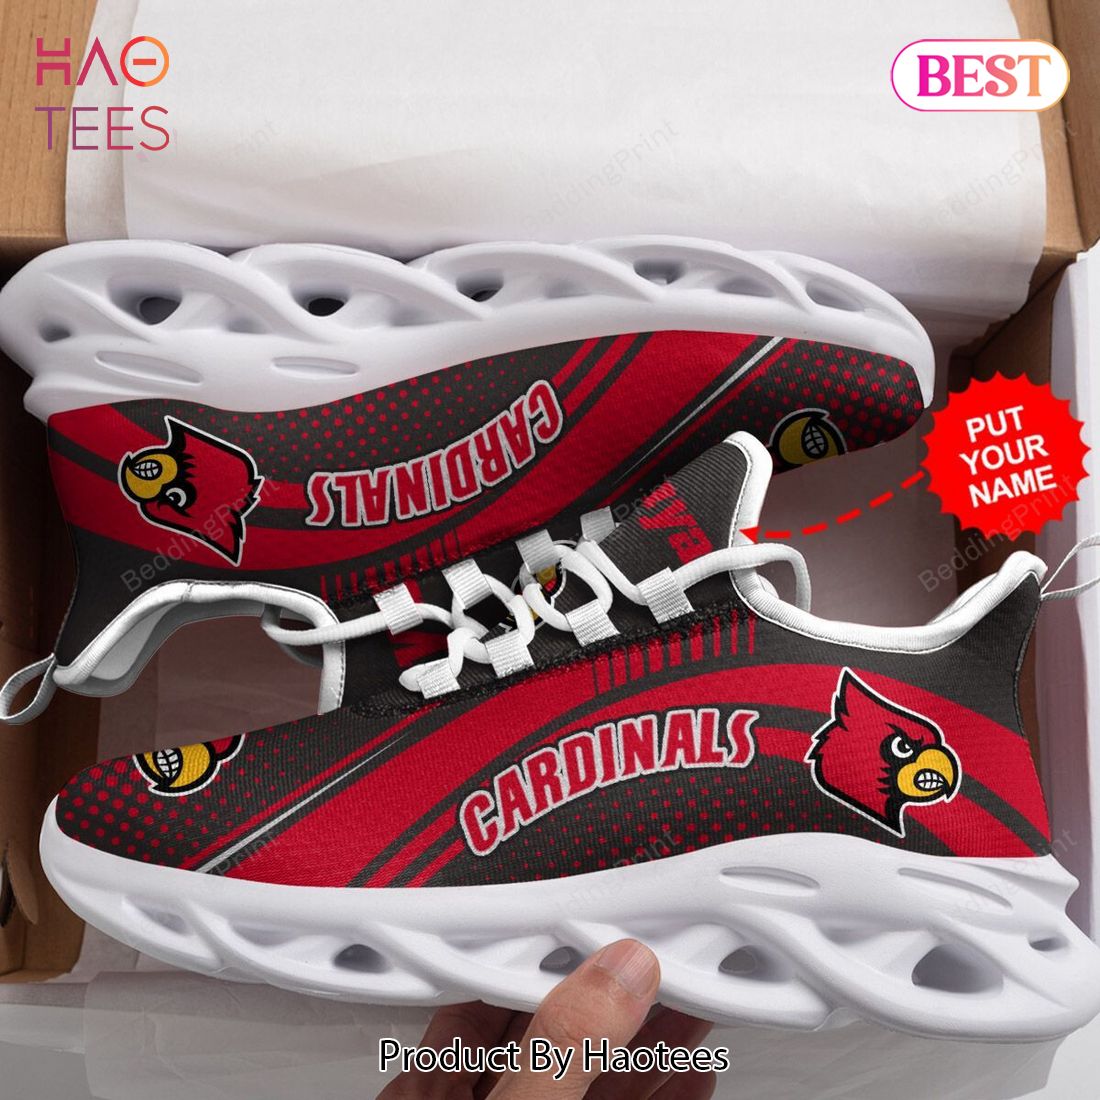 Louisville Cardinals Custom Name Air Cushion Sports Shoes